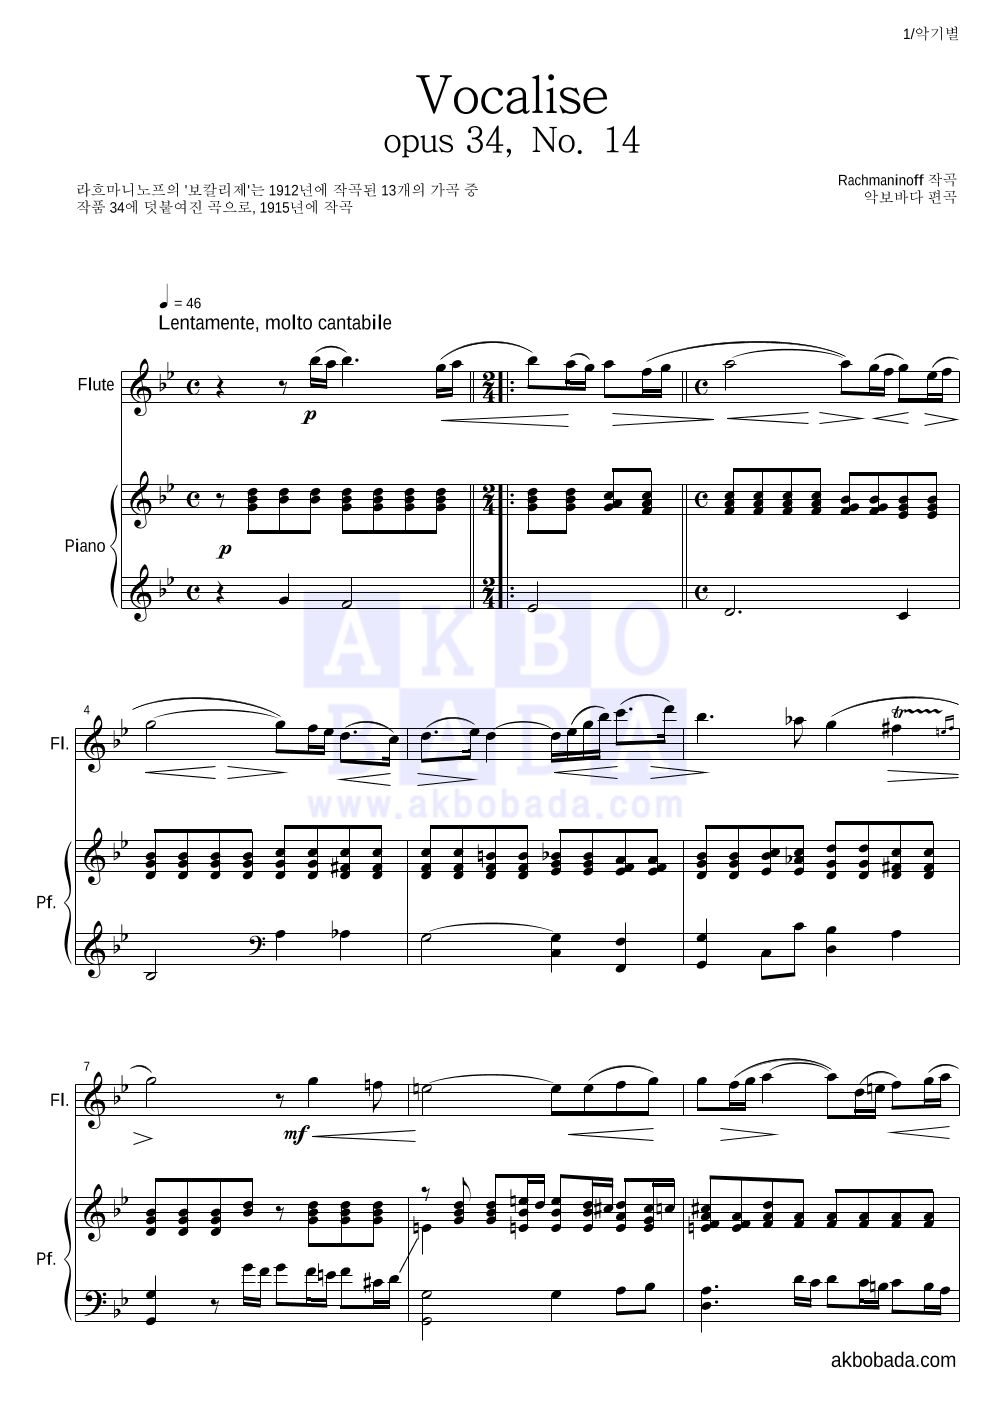 라흐마니노프 - 보칼리제(Vocalise) 플룻&피아노 악보 